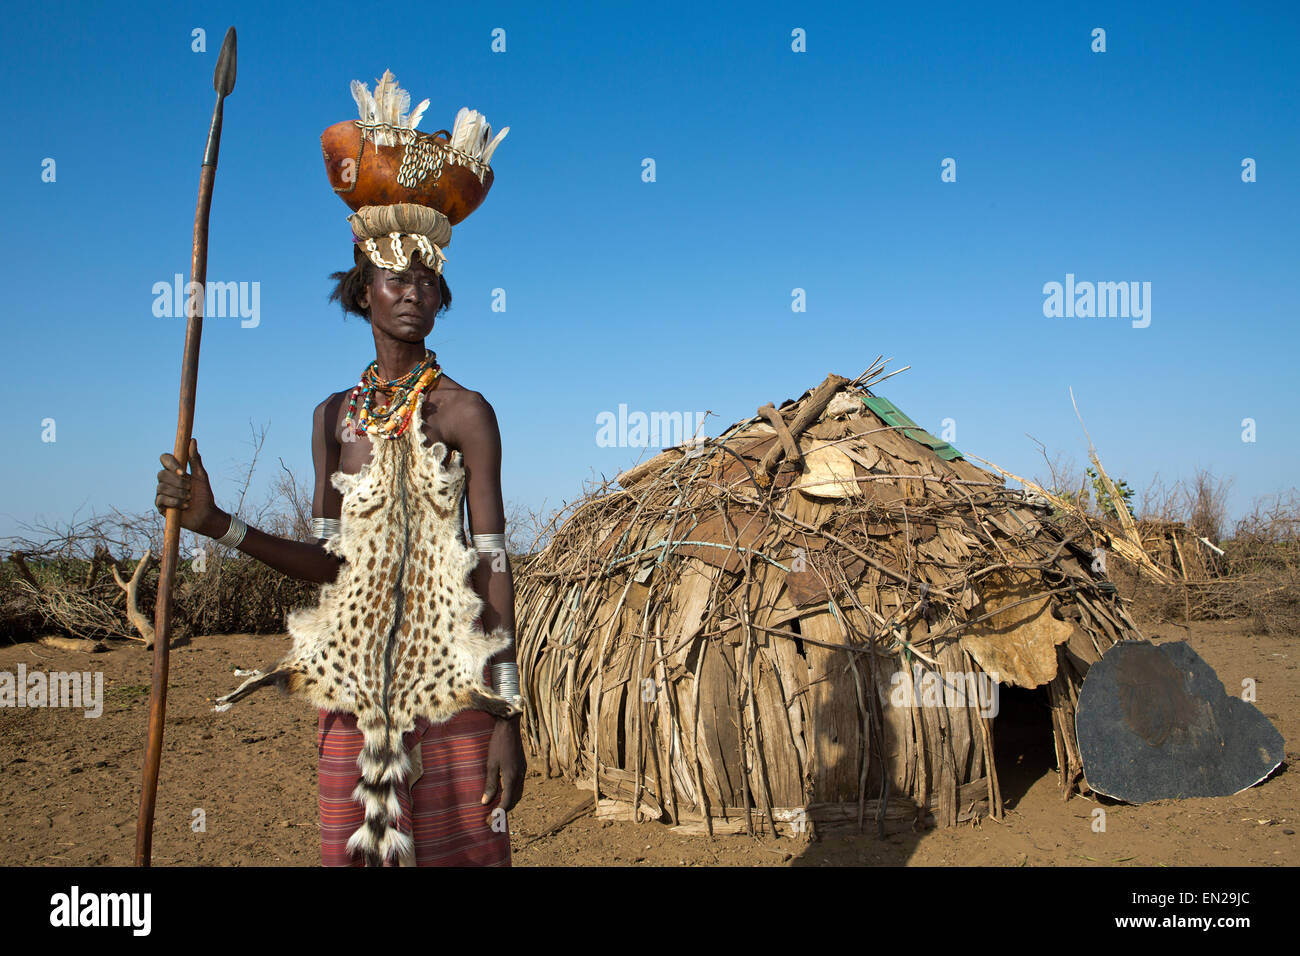 Dasanesh tribe in Ethiopia Stock Photo